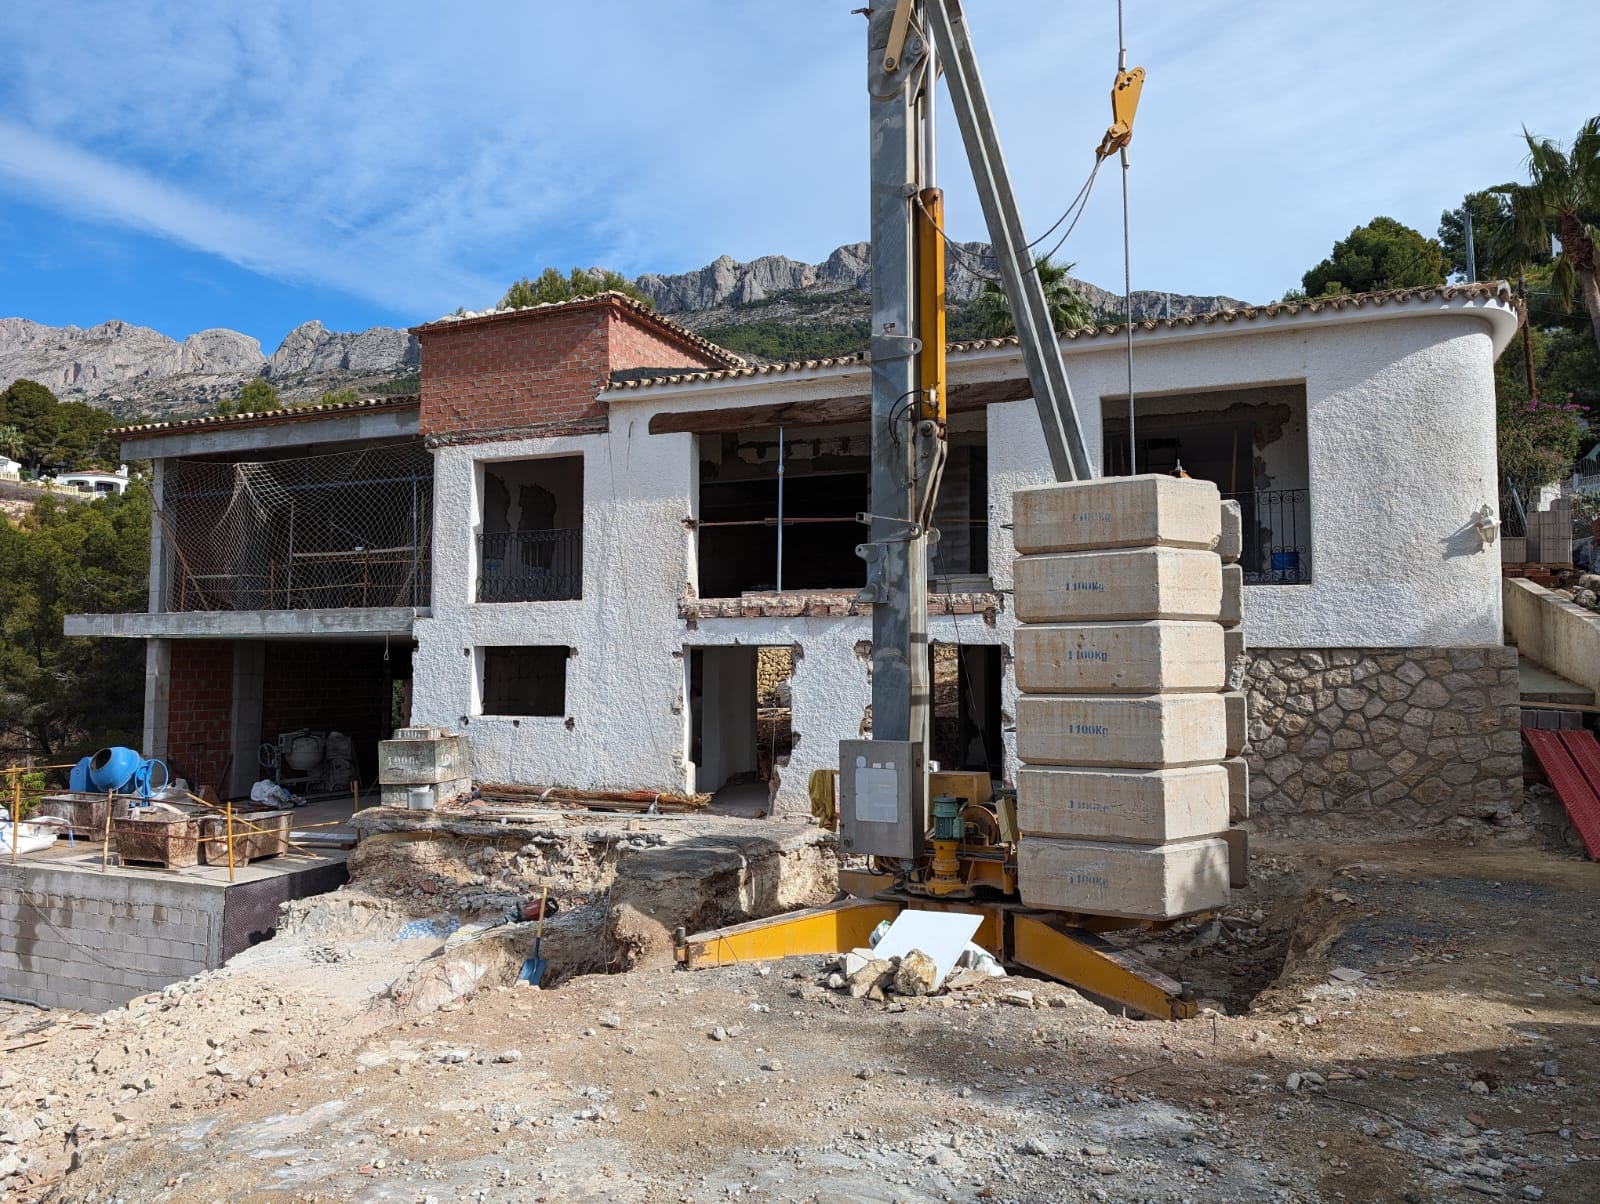 New build villa for sale in Galera de las Palmeras Altea, Costa Blanca